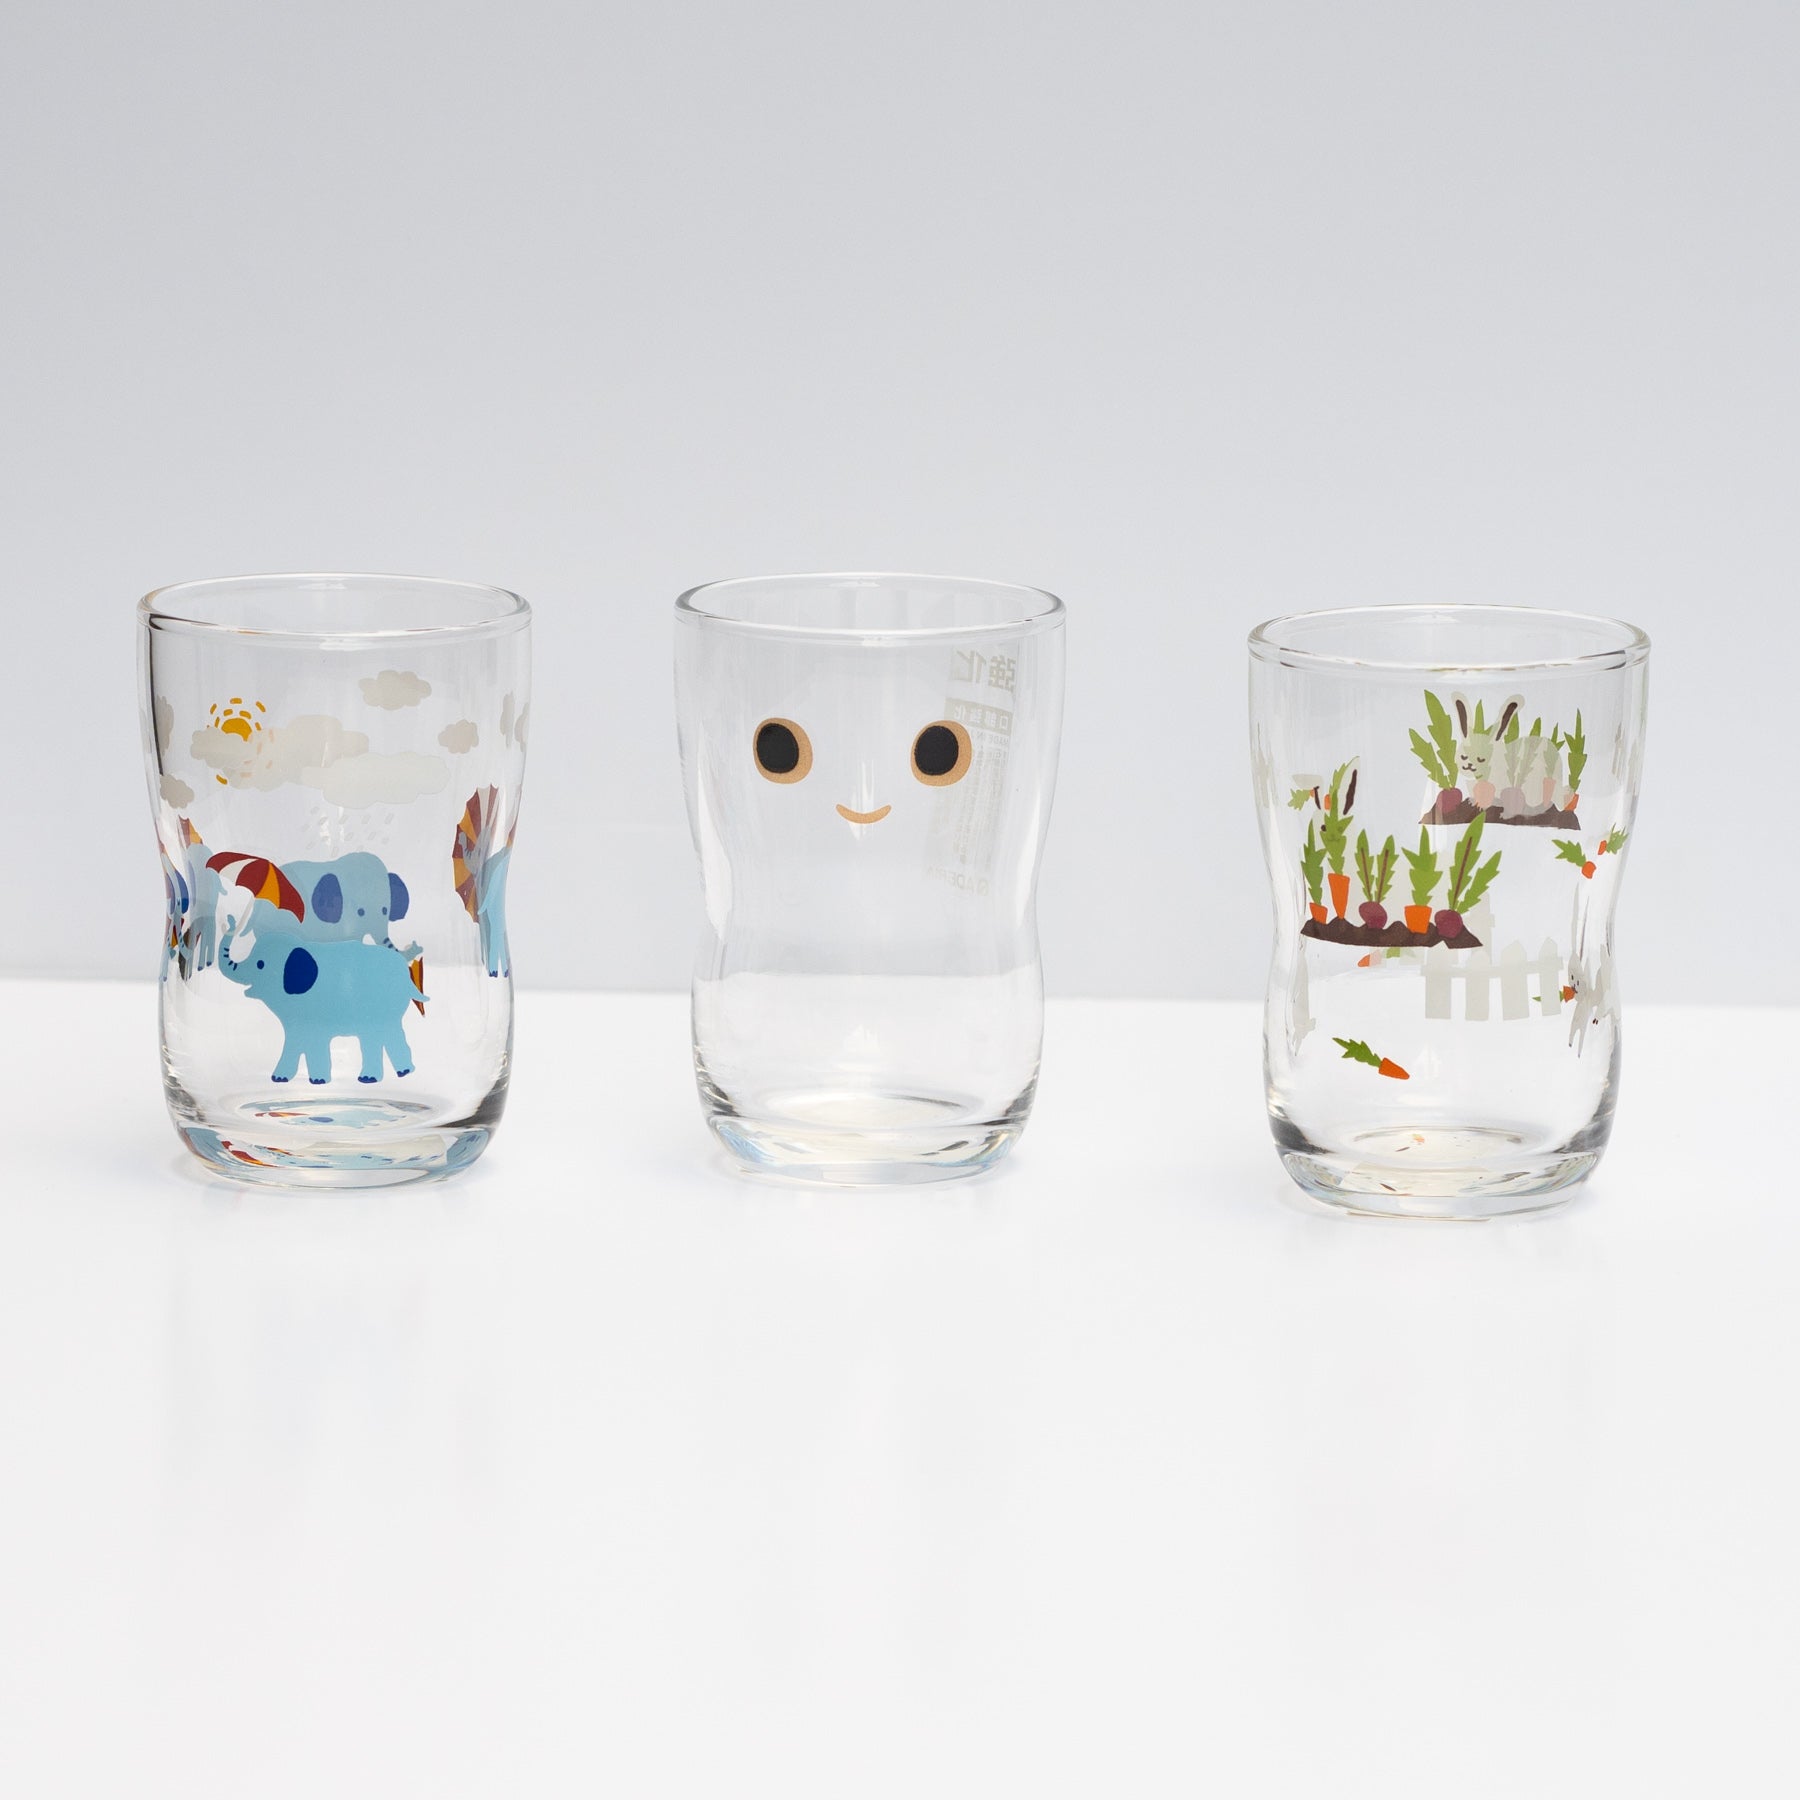 Japanese kids glass with face print by IIshizuka Glassshu